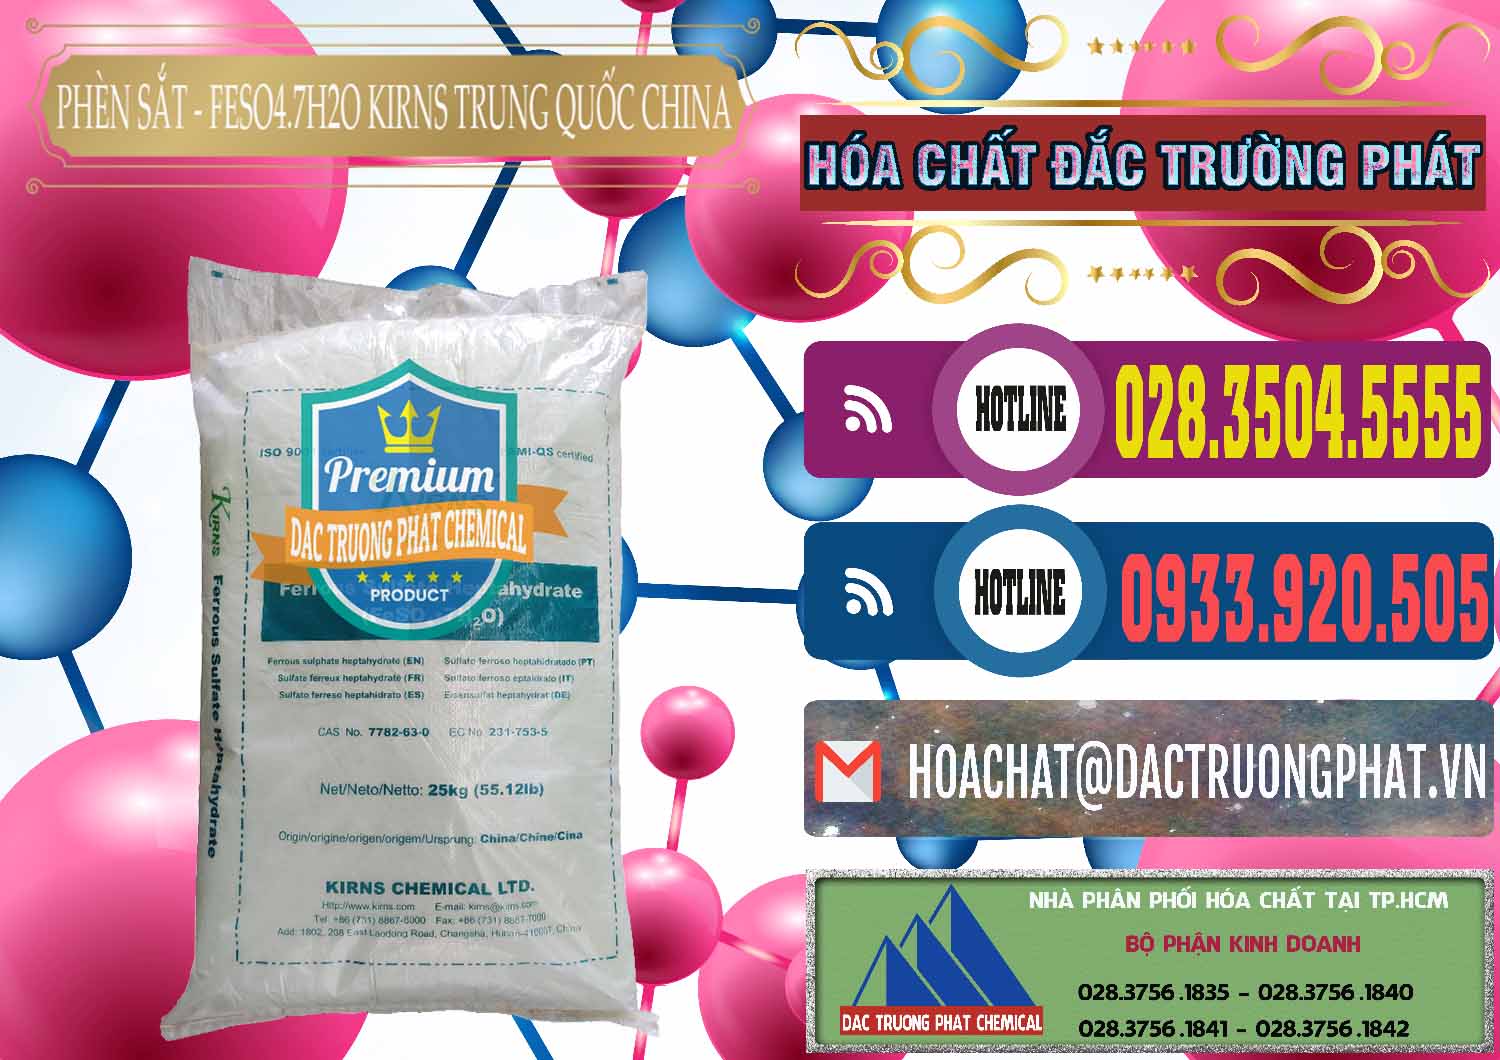 Đơn vị chuyên bán _ cung cấp Phèn Sắt - FeSO4.7H2O 98% Kirns Trung Quốc China - 0117 - Cty phân phối & cung cấp hóa chất tại TP.HCM - muabanhoachat.com.vn